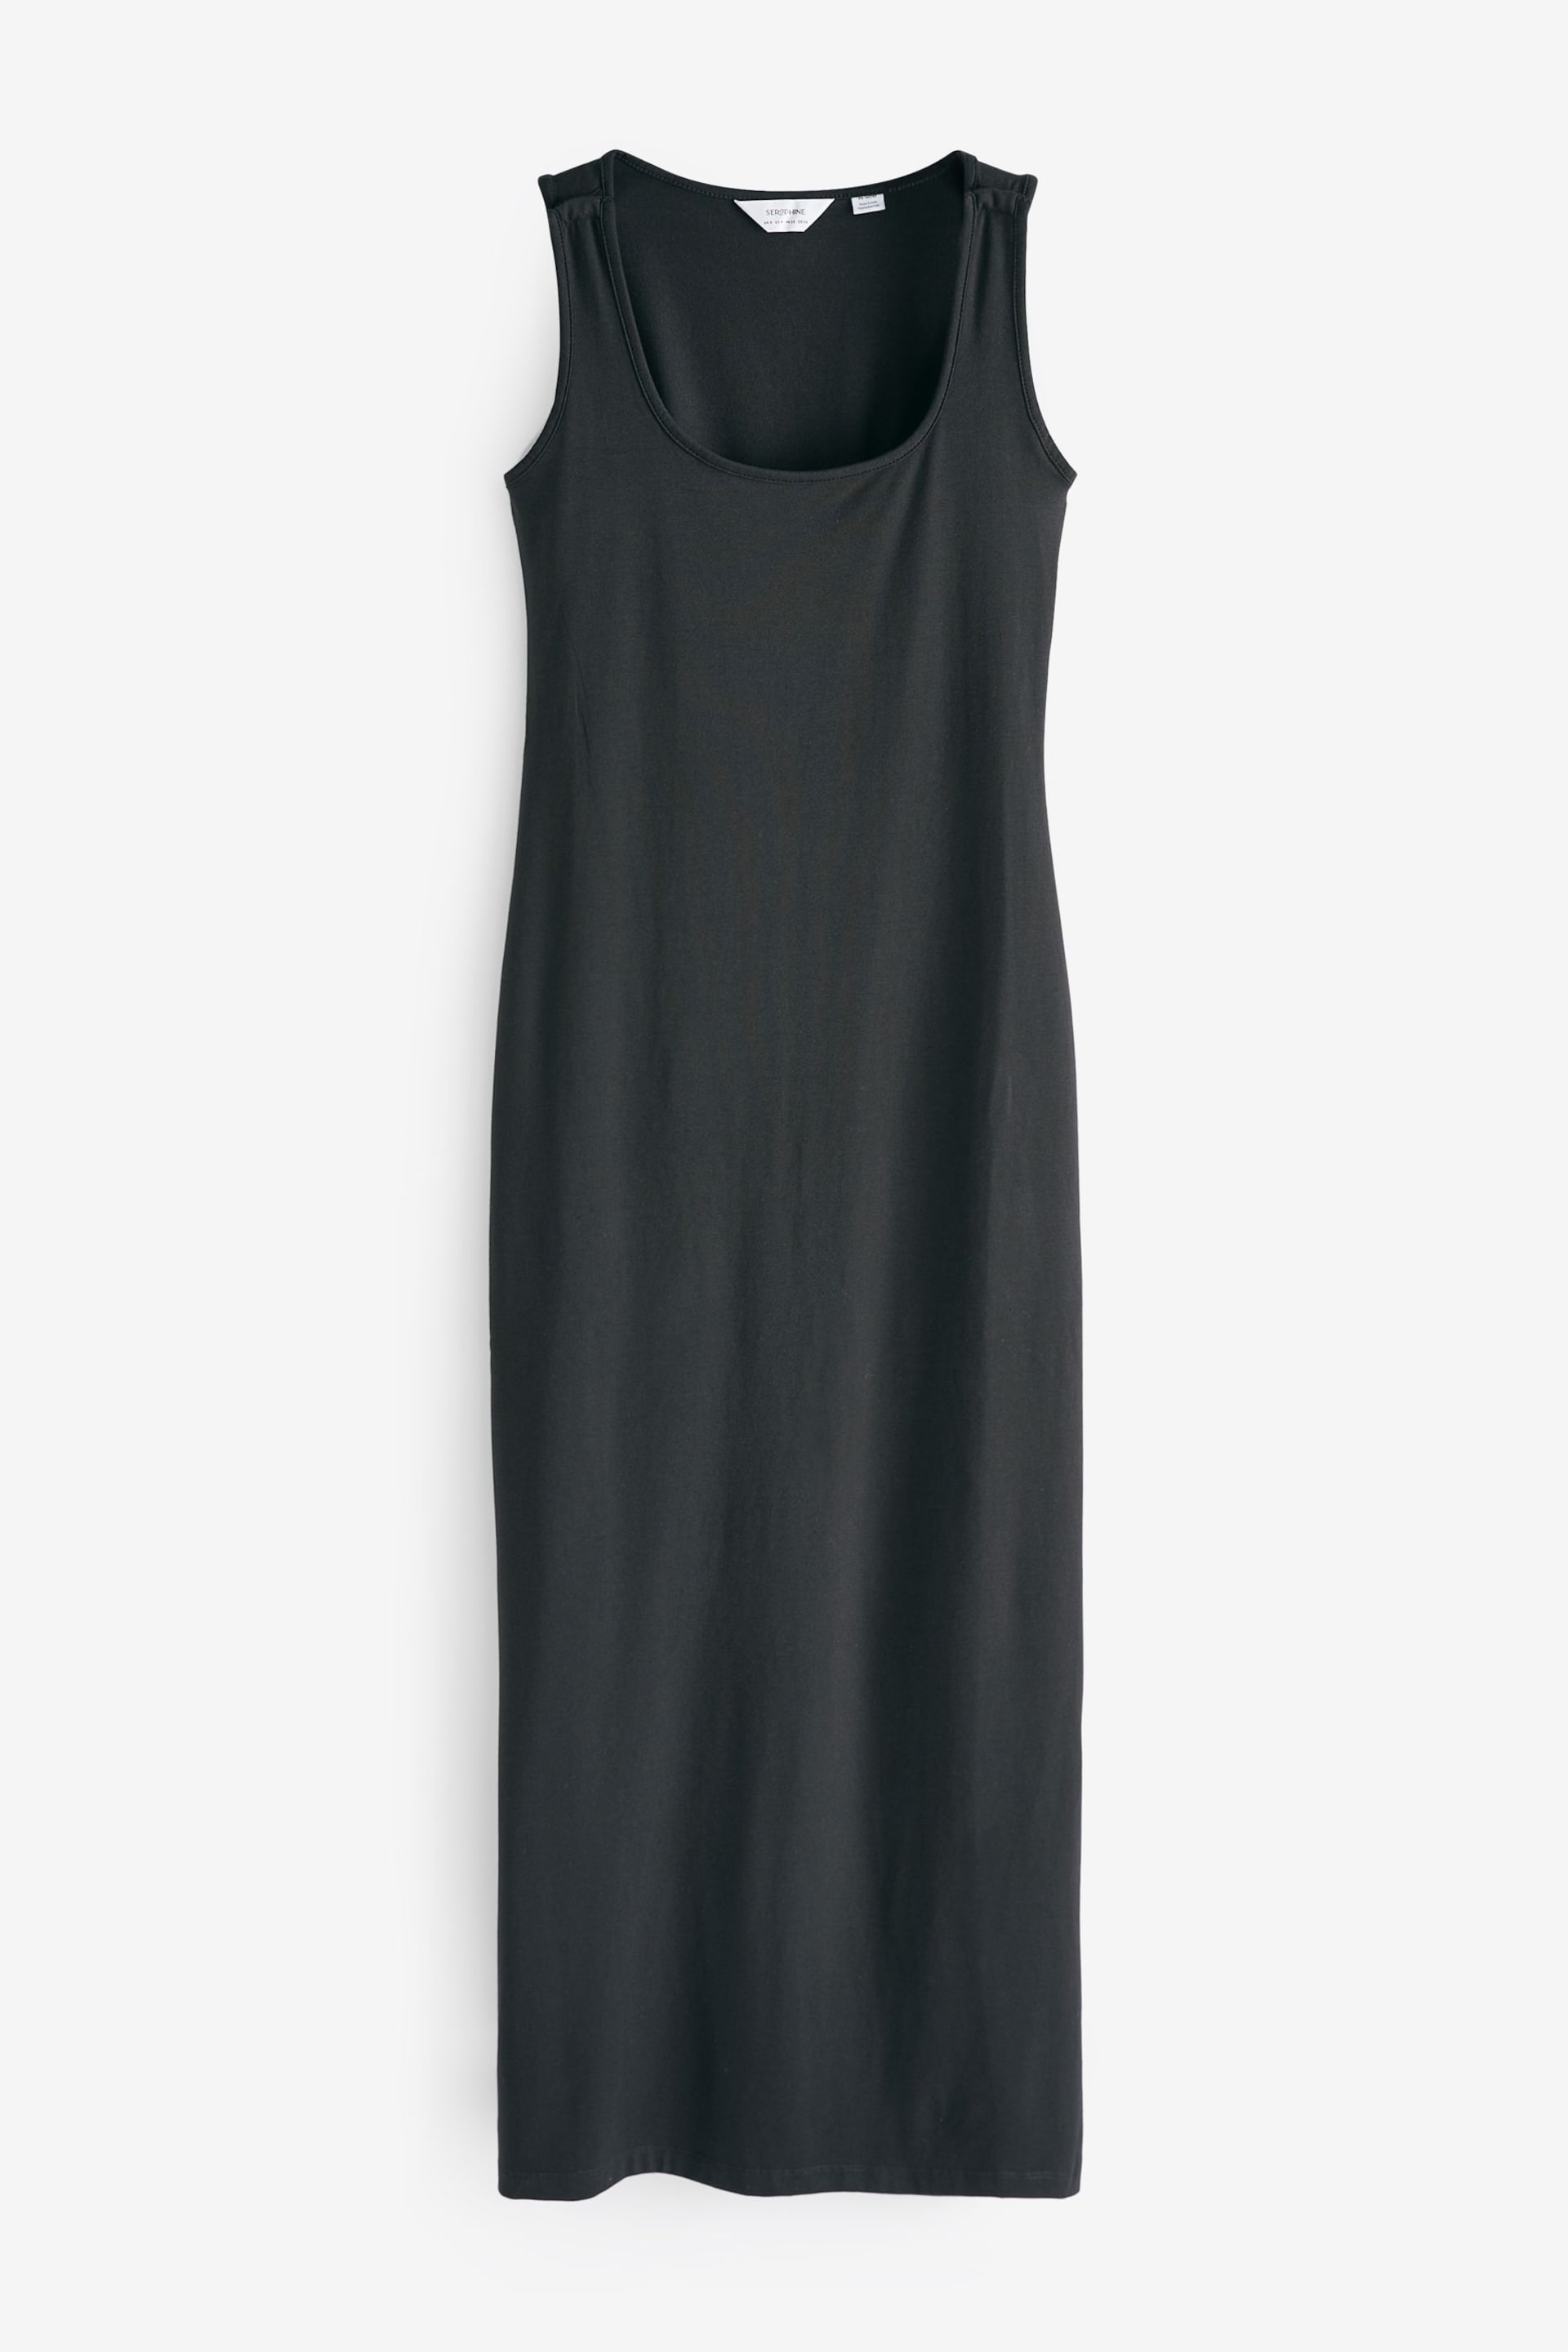 Seraphine Scoop Neck Bodycon Black Dress - Image 8 of 8